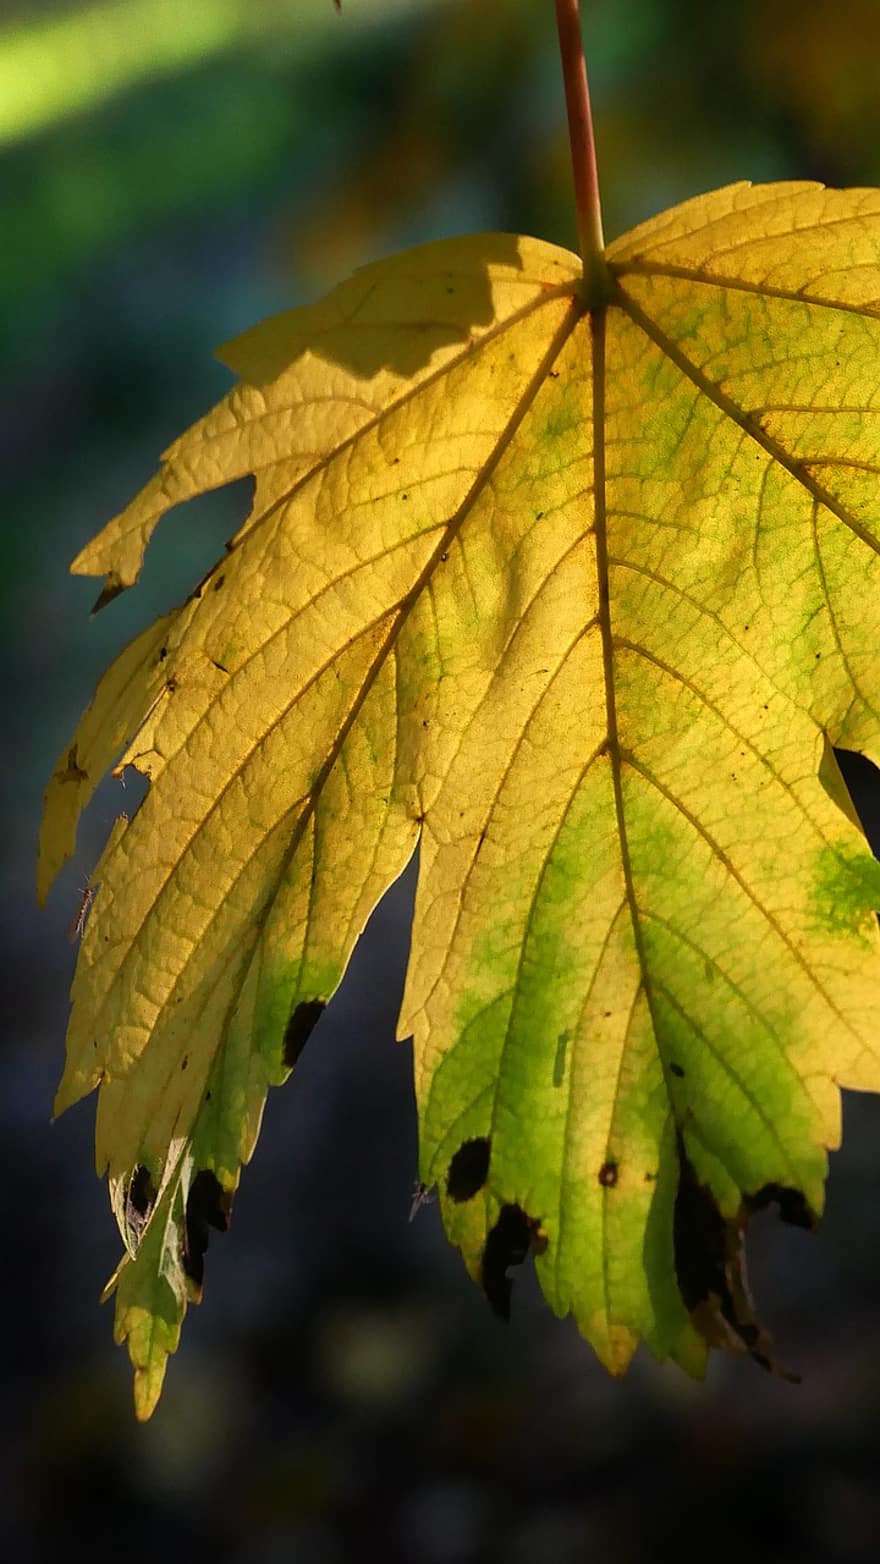 liść, las, spadek, światło, jesień, żółty, pora roku, drzewo, zbliżenie, intensywny kolor, tła